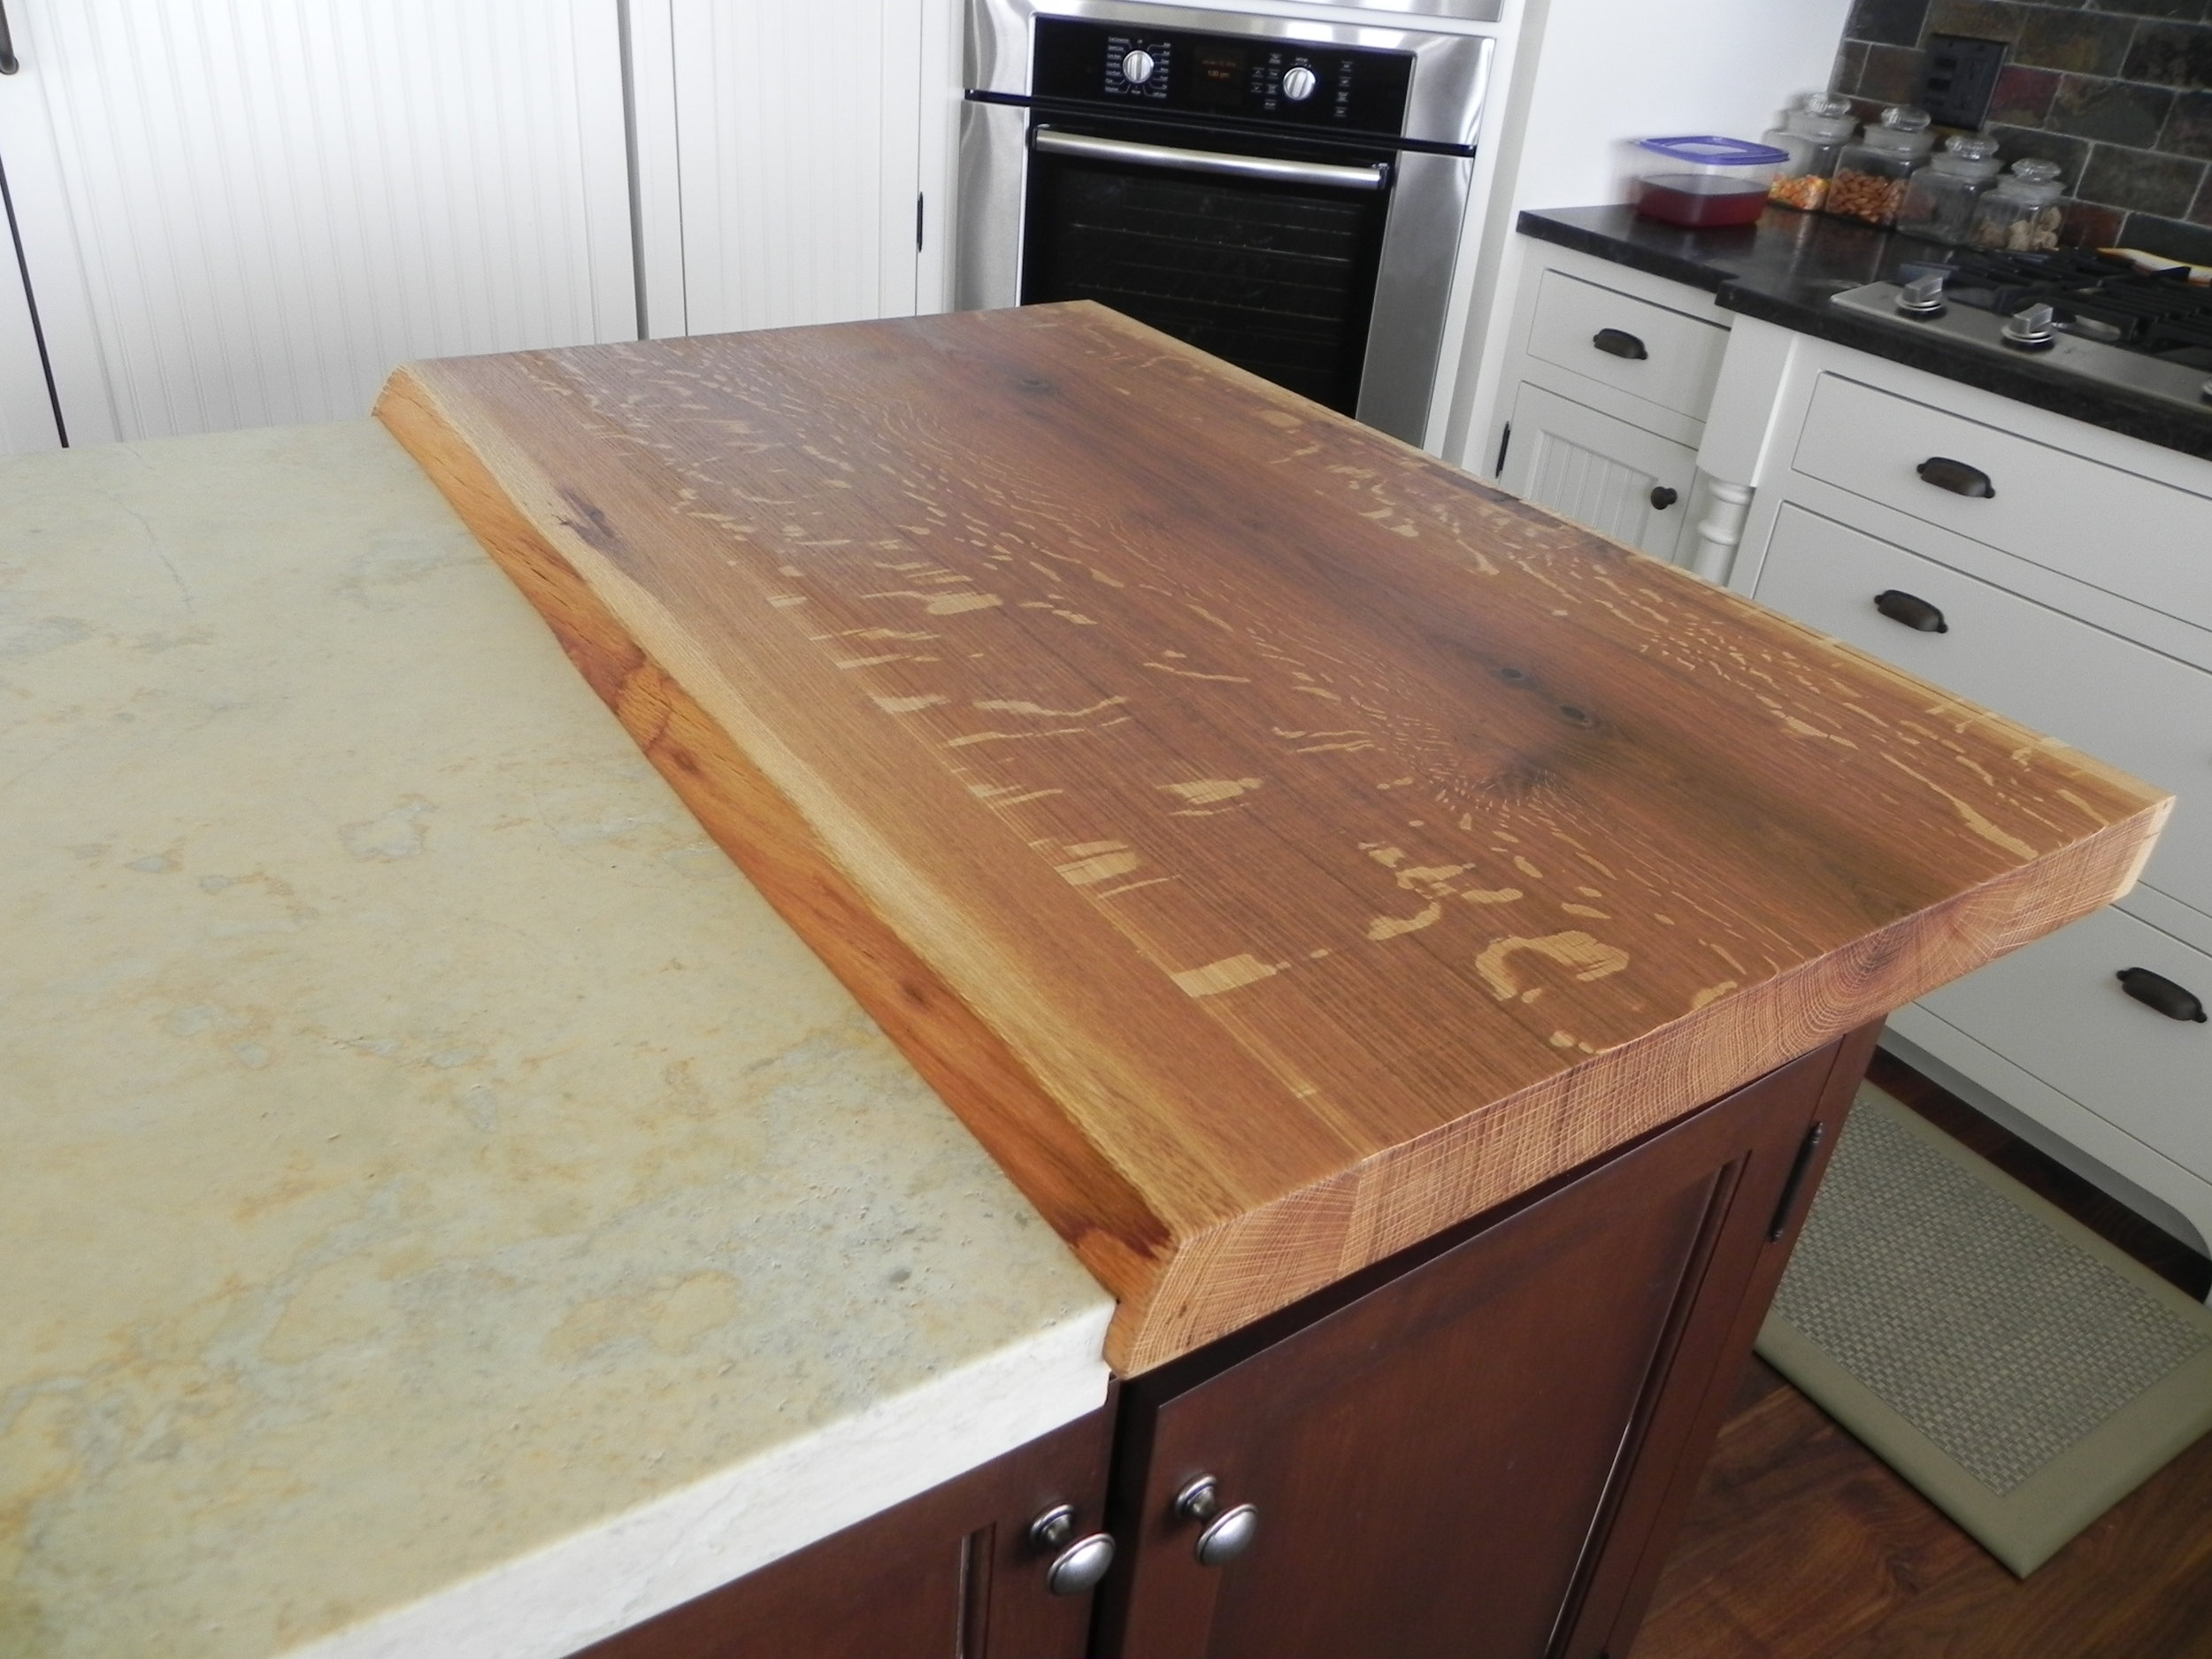 Quarter-sawn White Oak Cutting Board